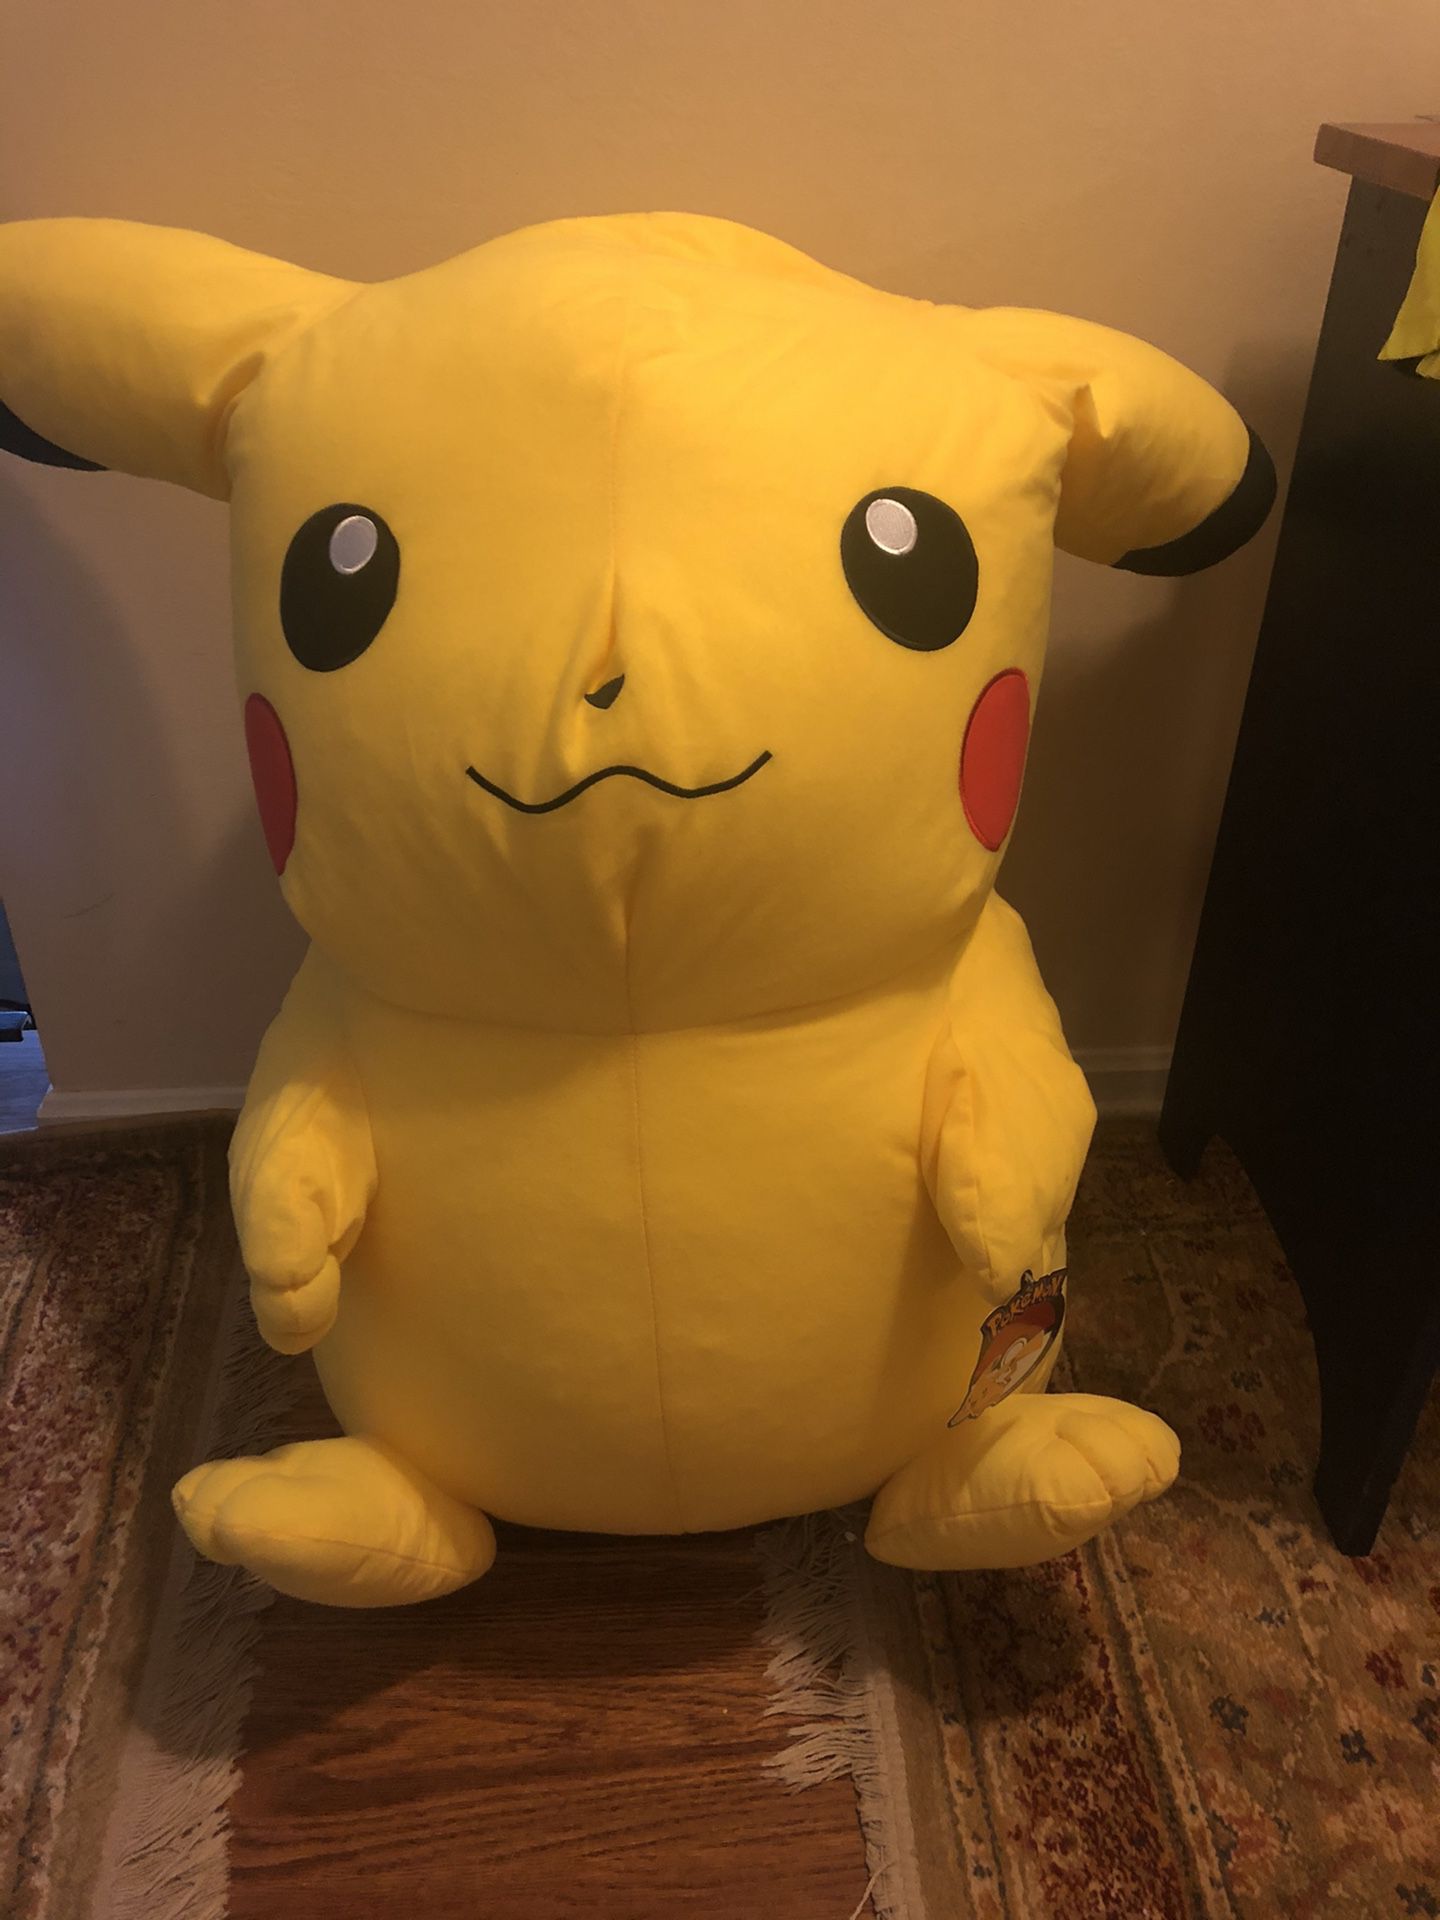 2.5 feet tall Oversized Plush Stuffed Animal-Pikachu-New